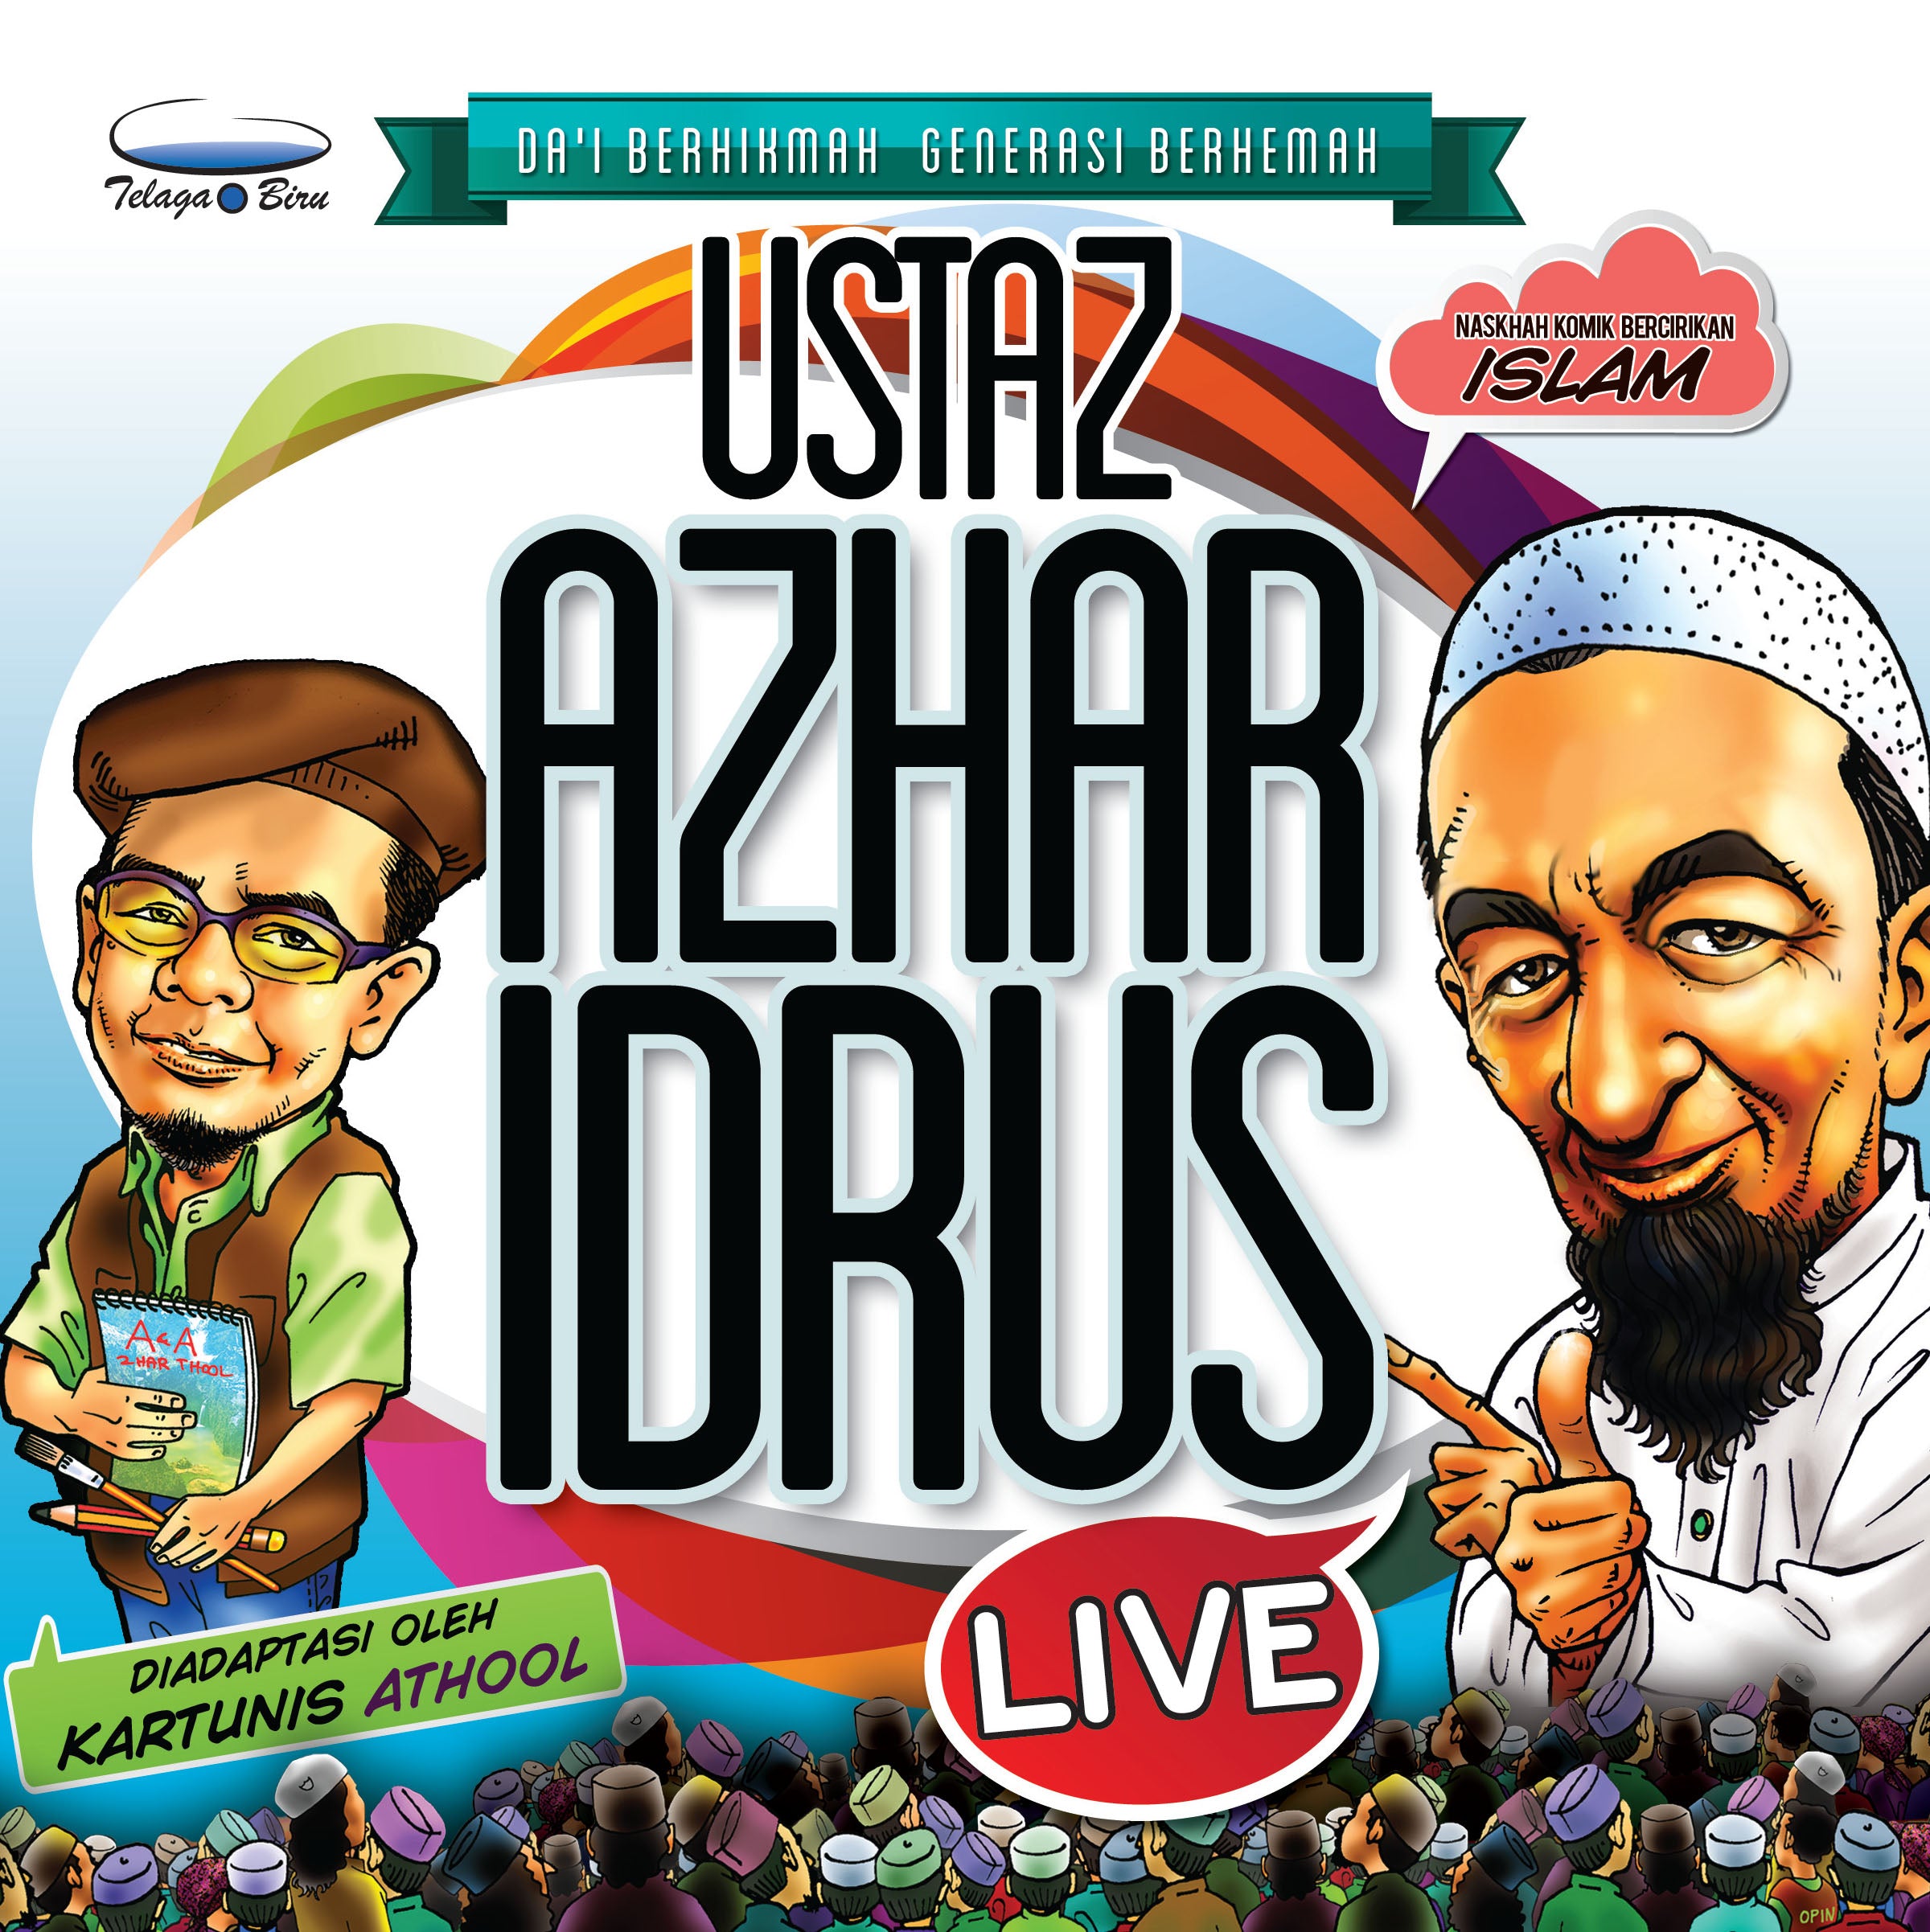 Ustaz Azhar Idrus Live! - (TBBK1250)